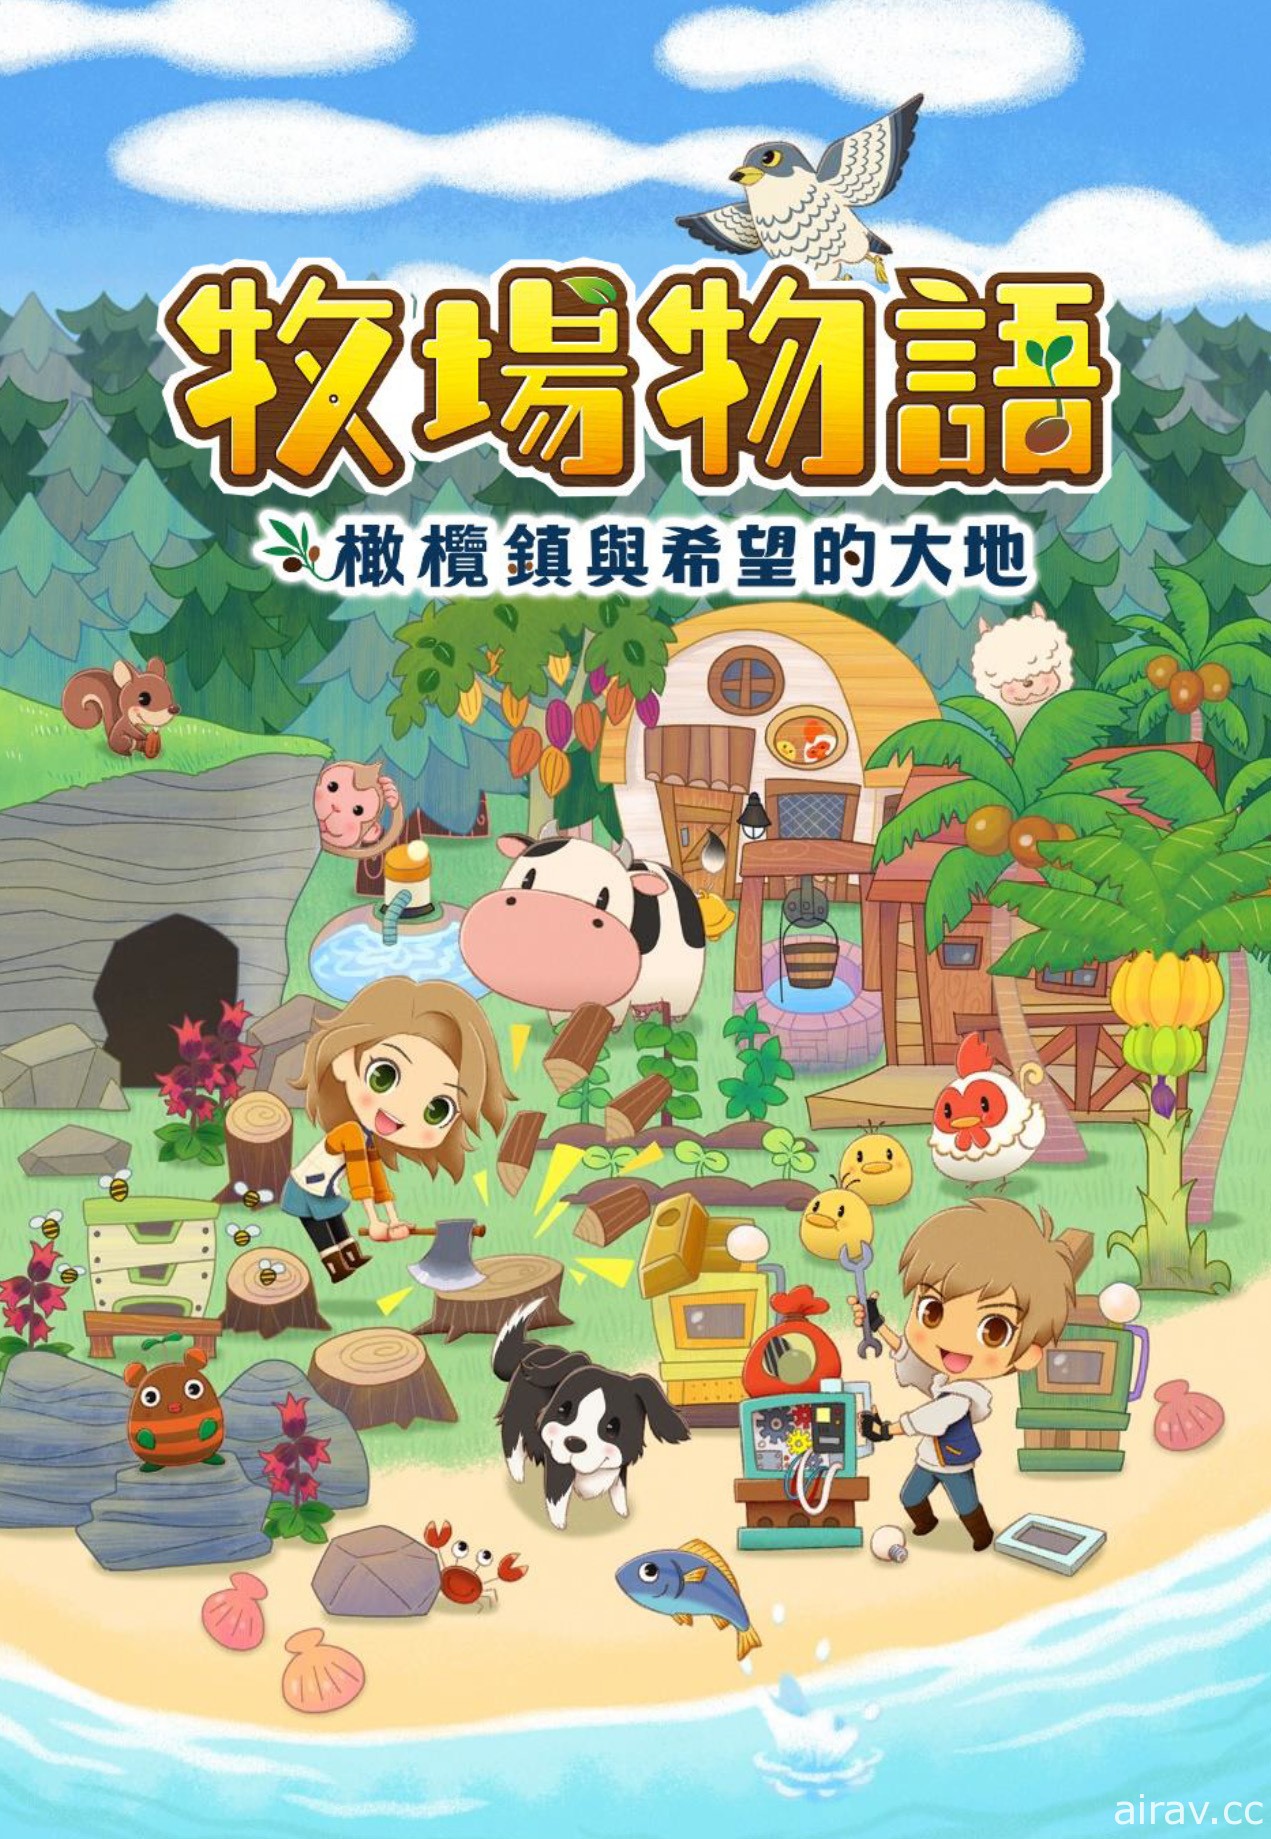 《牧場物語》系列首款 Switch 新作《橄欖鎮與希望的大地》中文版將同步發售